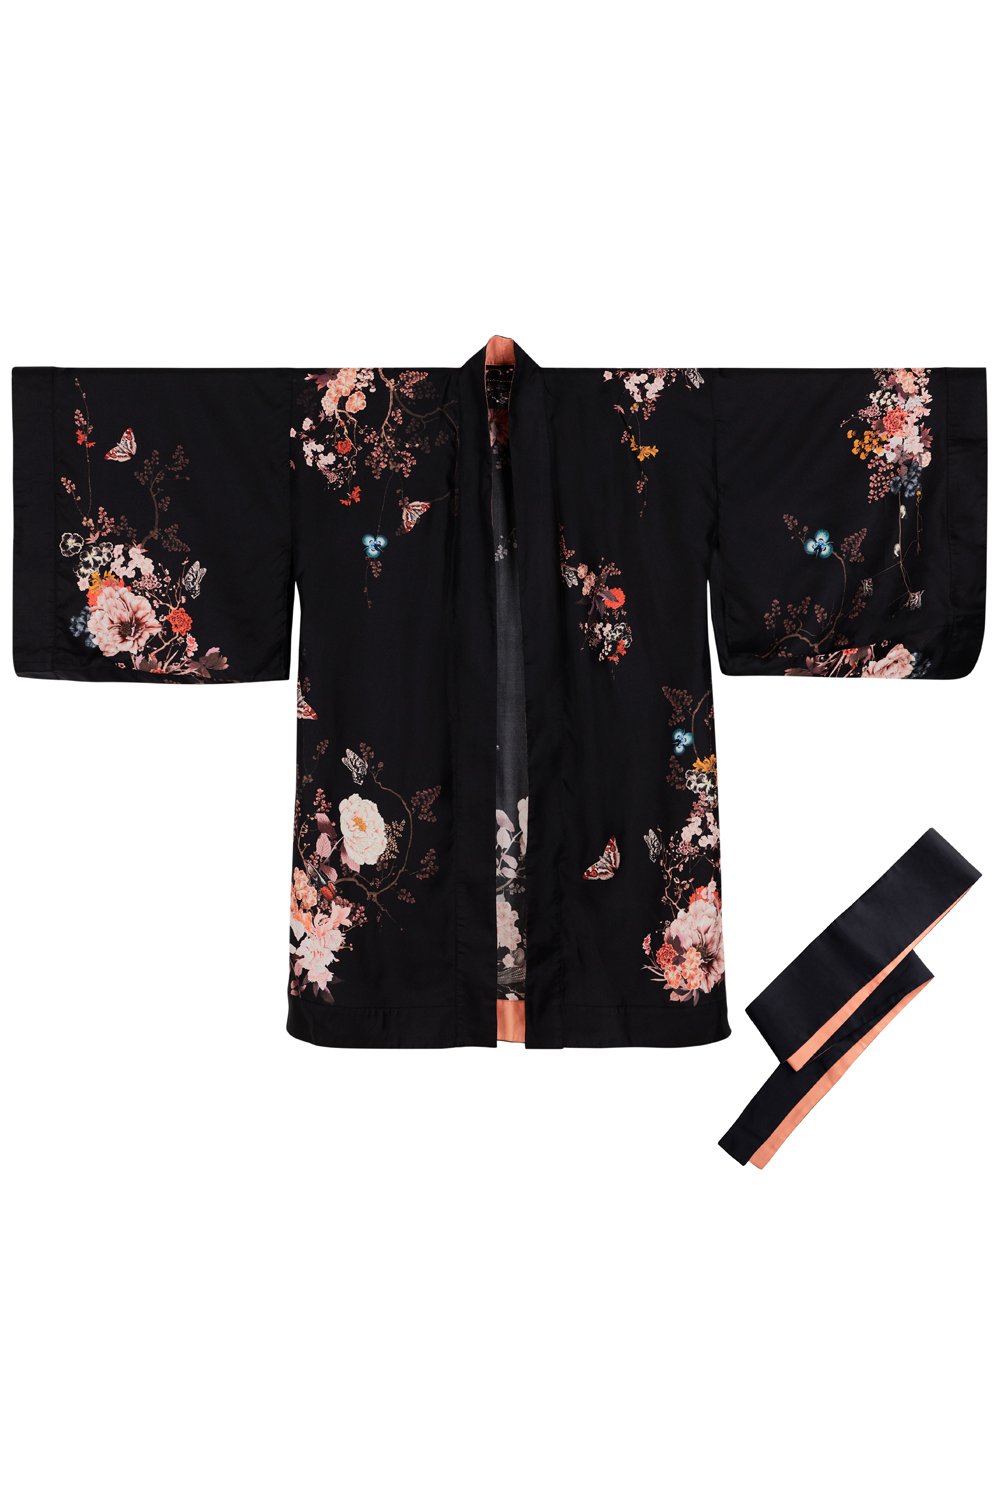 Silk Kimono Dressing Gown | Black kimono from Helen Loveday for 255